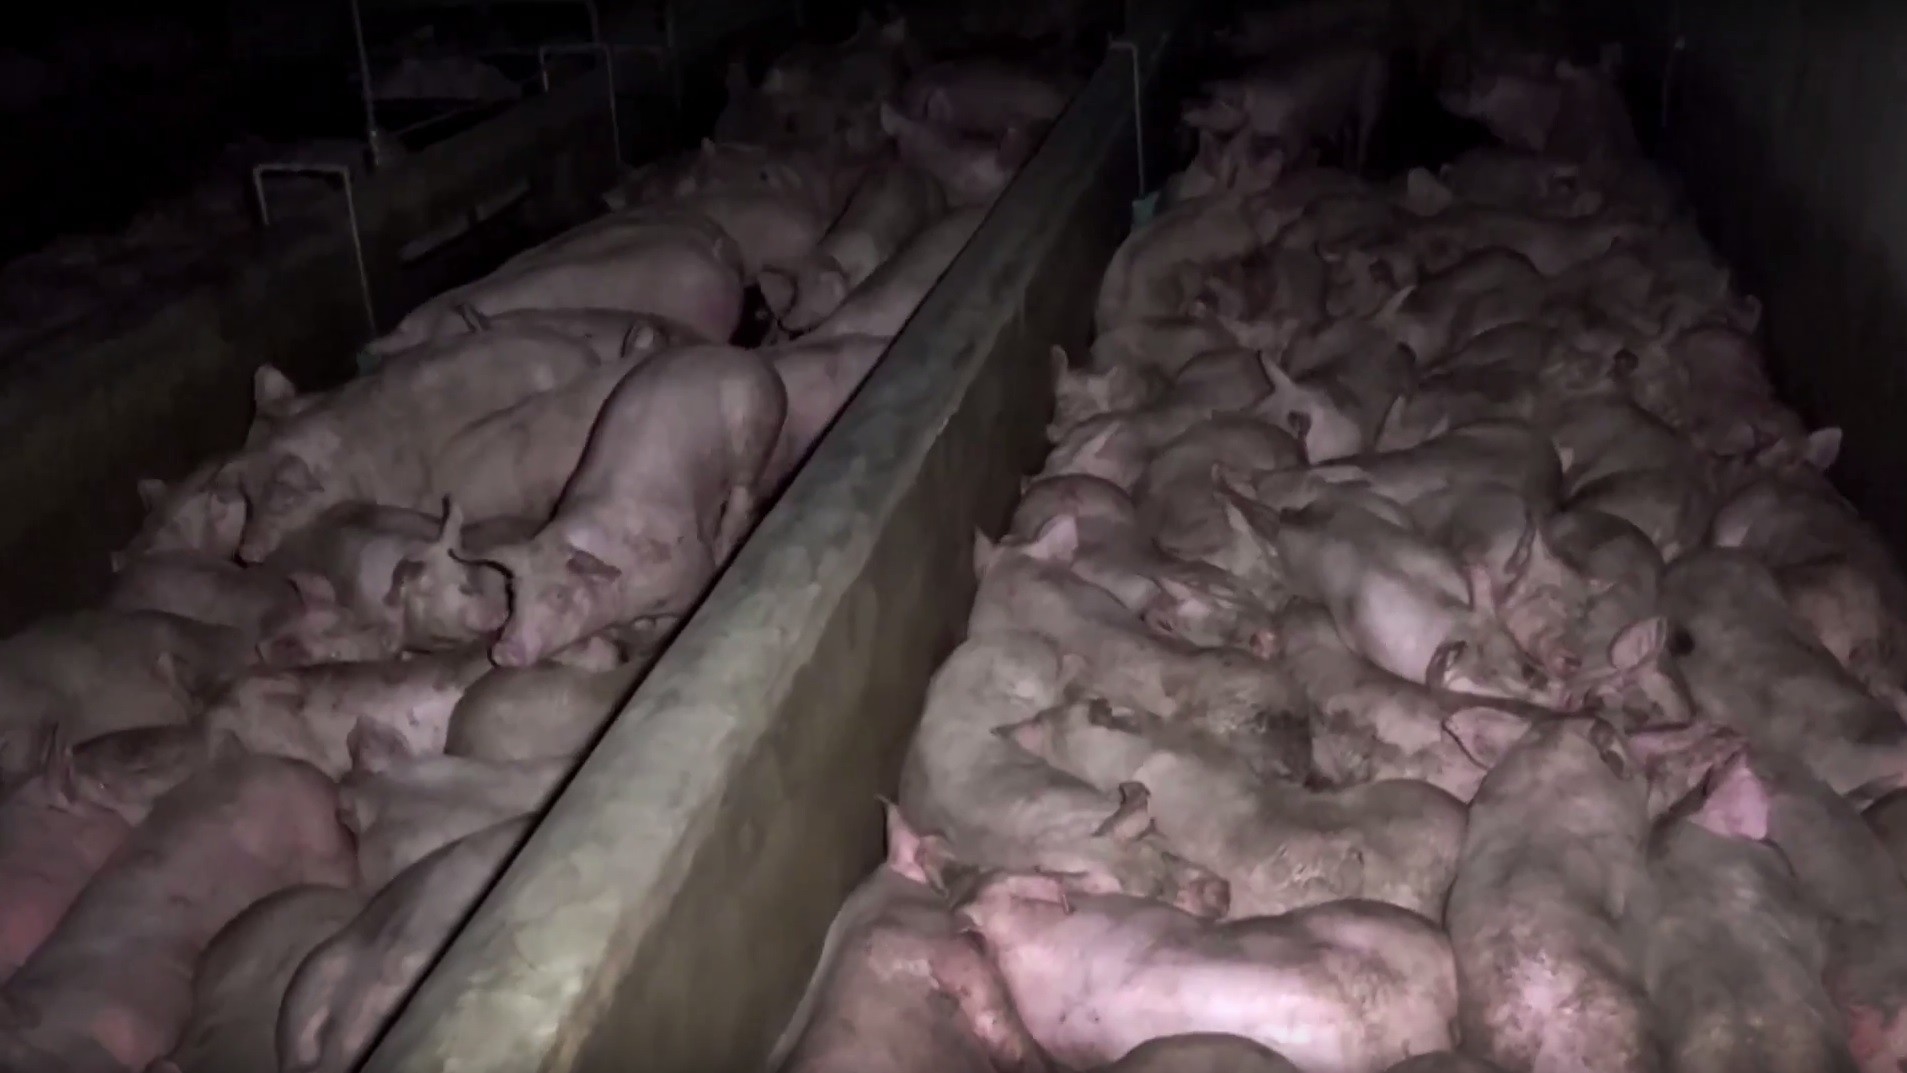 L214 dénonce le traitement des cochons dans un abattoir d'Ile-de-France (VIDEO CHOC)